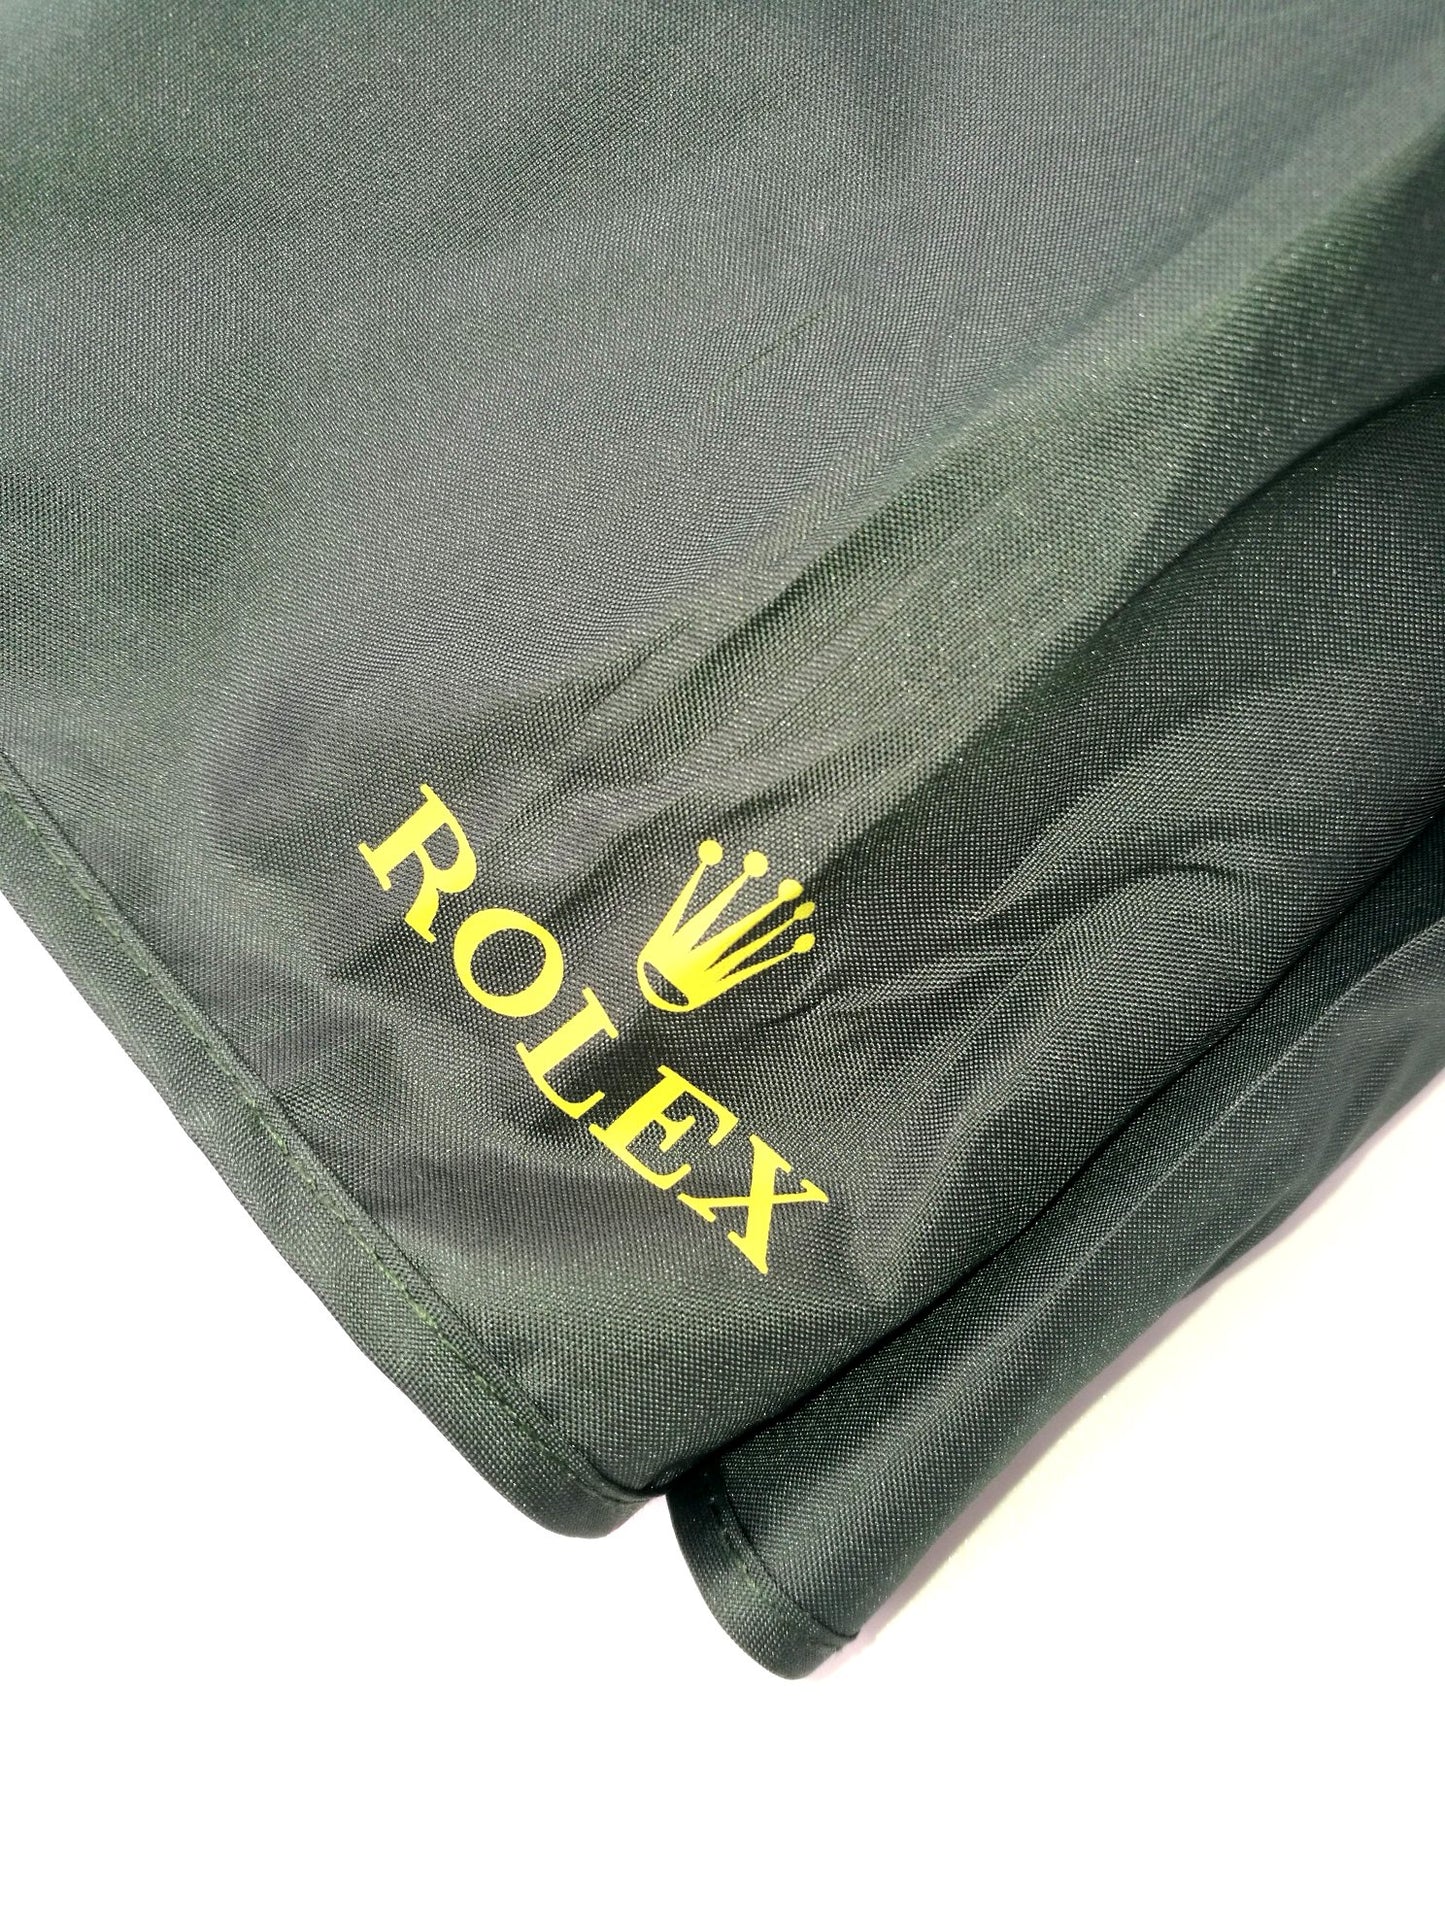 Ombrello Rolex vip gift